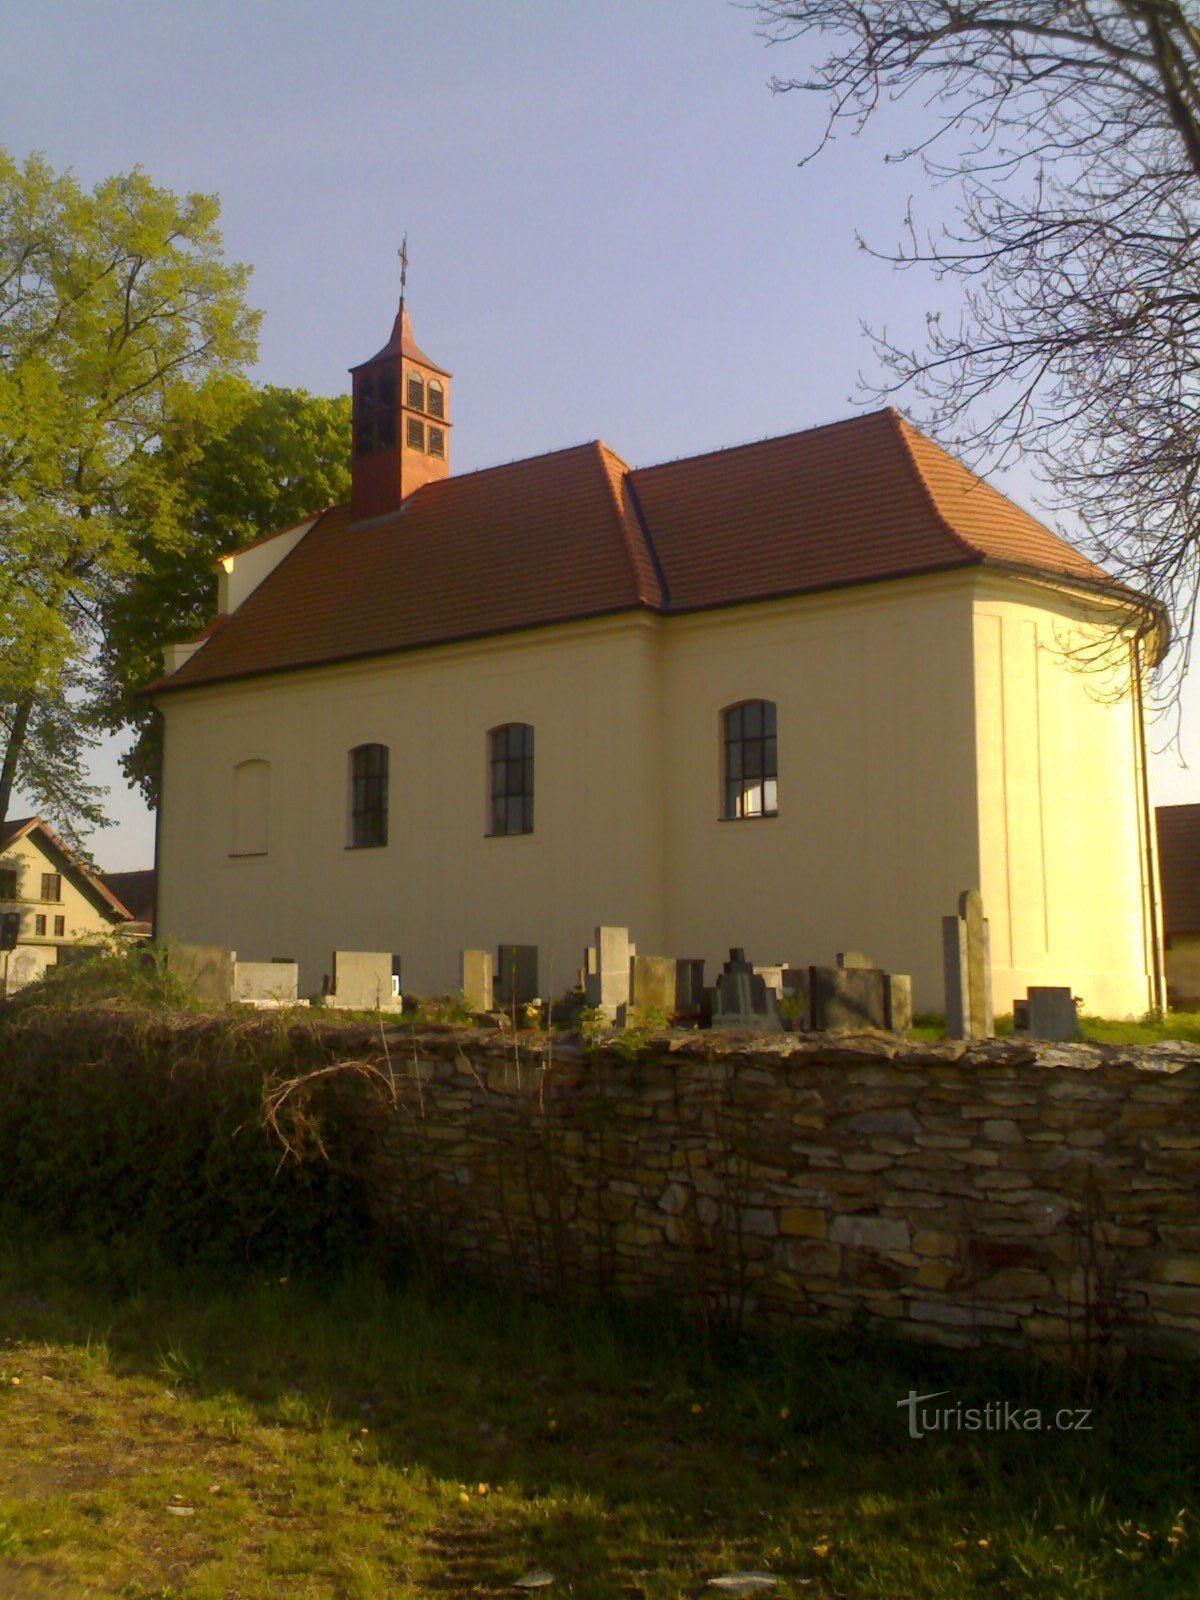 Krňovice - biserica